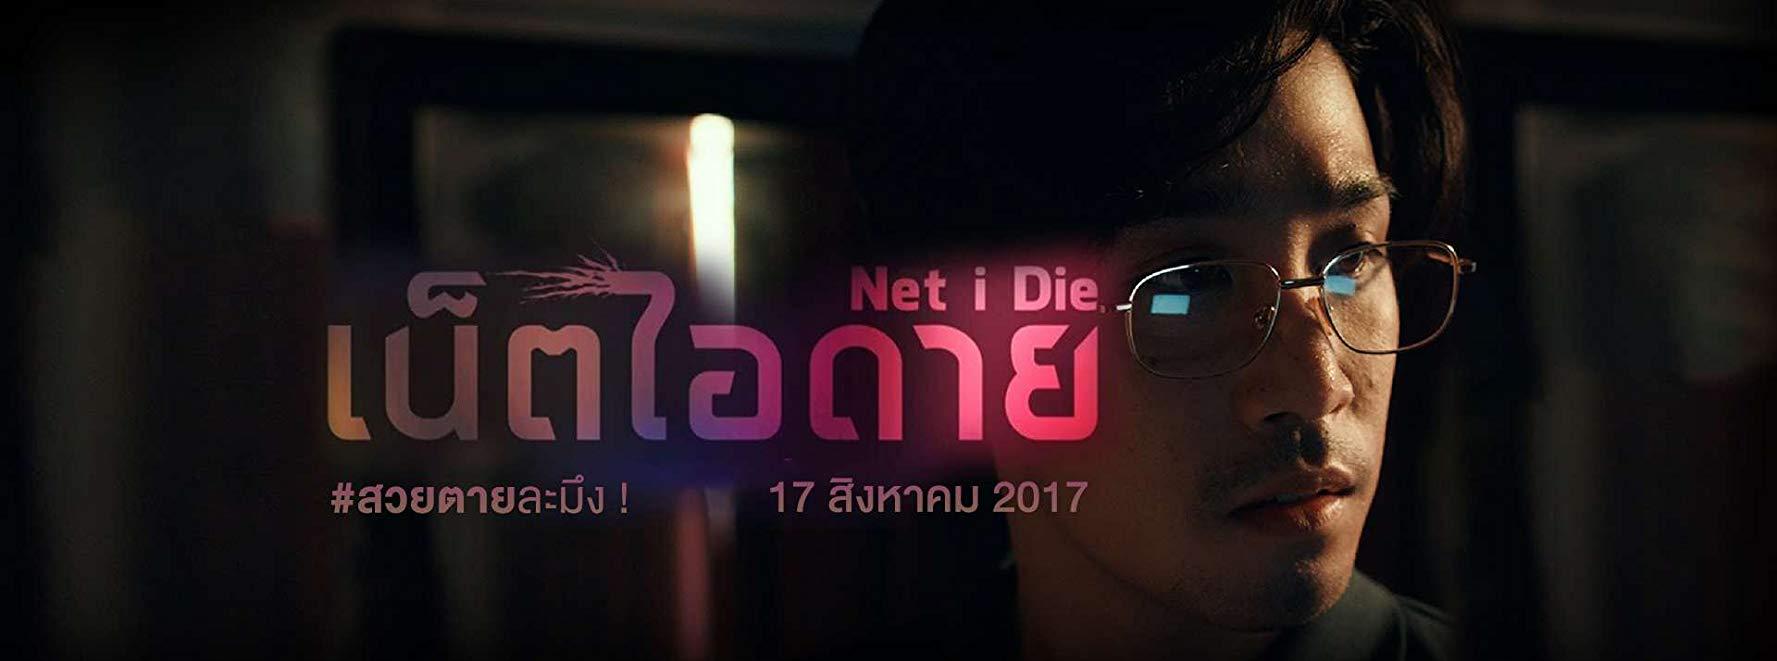 مشاهدة فيلم Net I Die (2017) مترجم